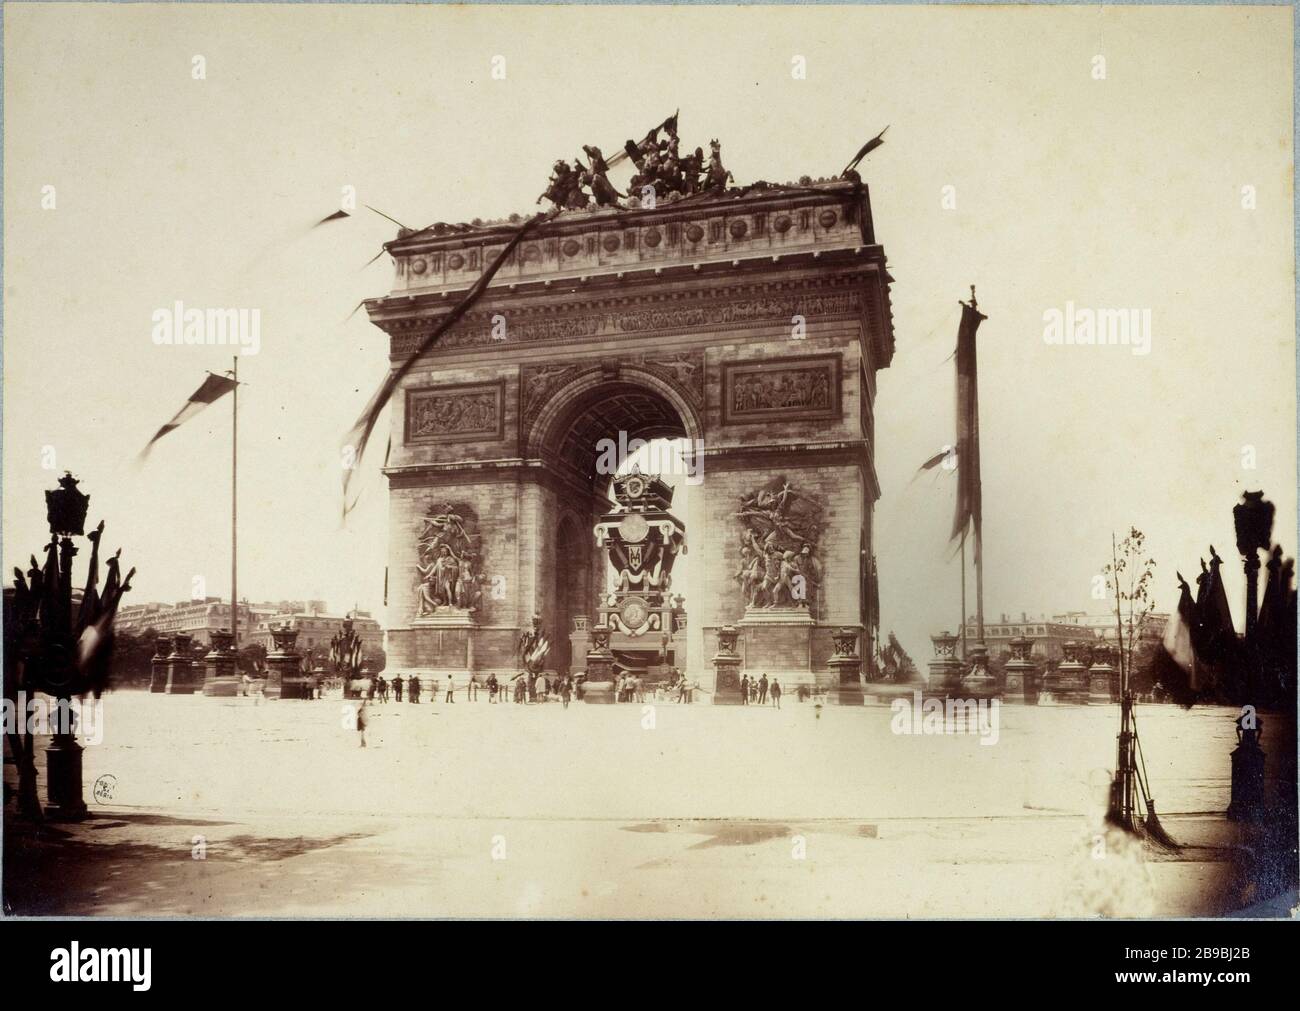 FUNERAILLES DE VICTOR HUGO Funérailles de Victor Hugo, 30 mai 1885. Photographie d'Henri Godefroy (1837-1913). Paris, musée Carnavalet. Banque D'Images